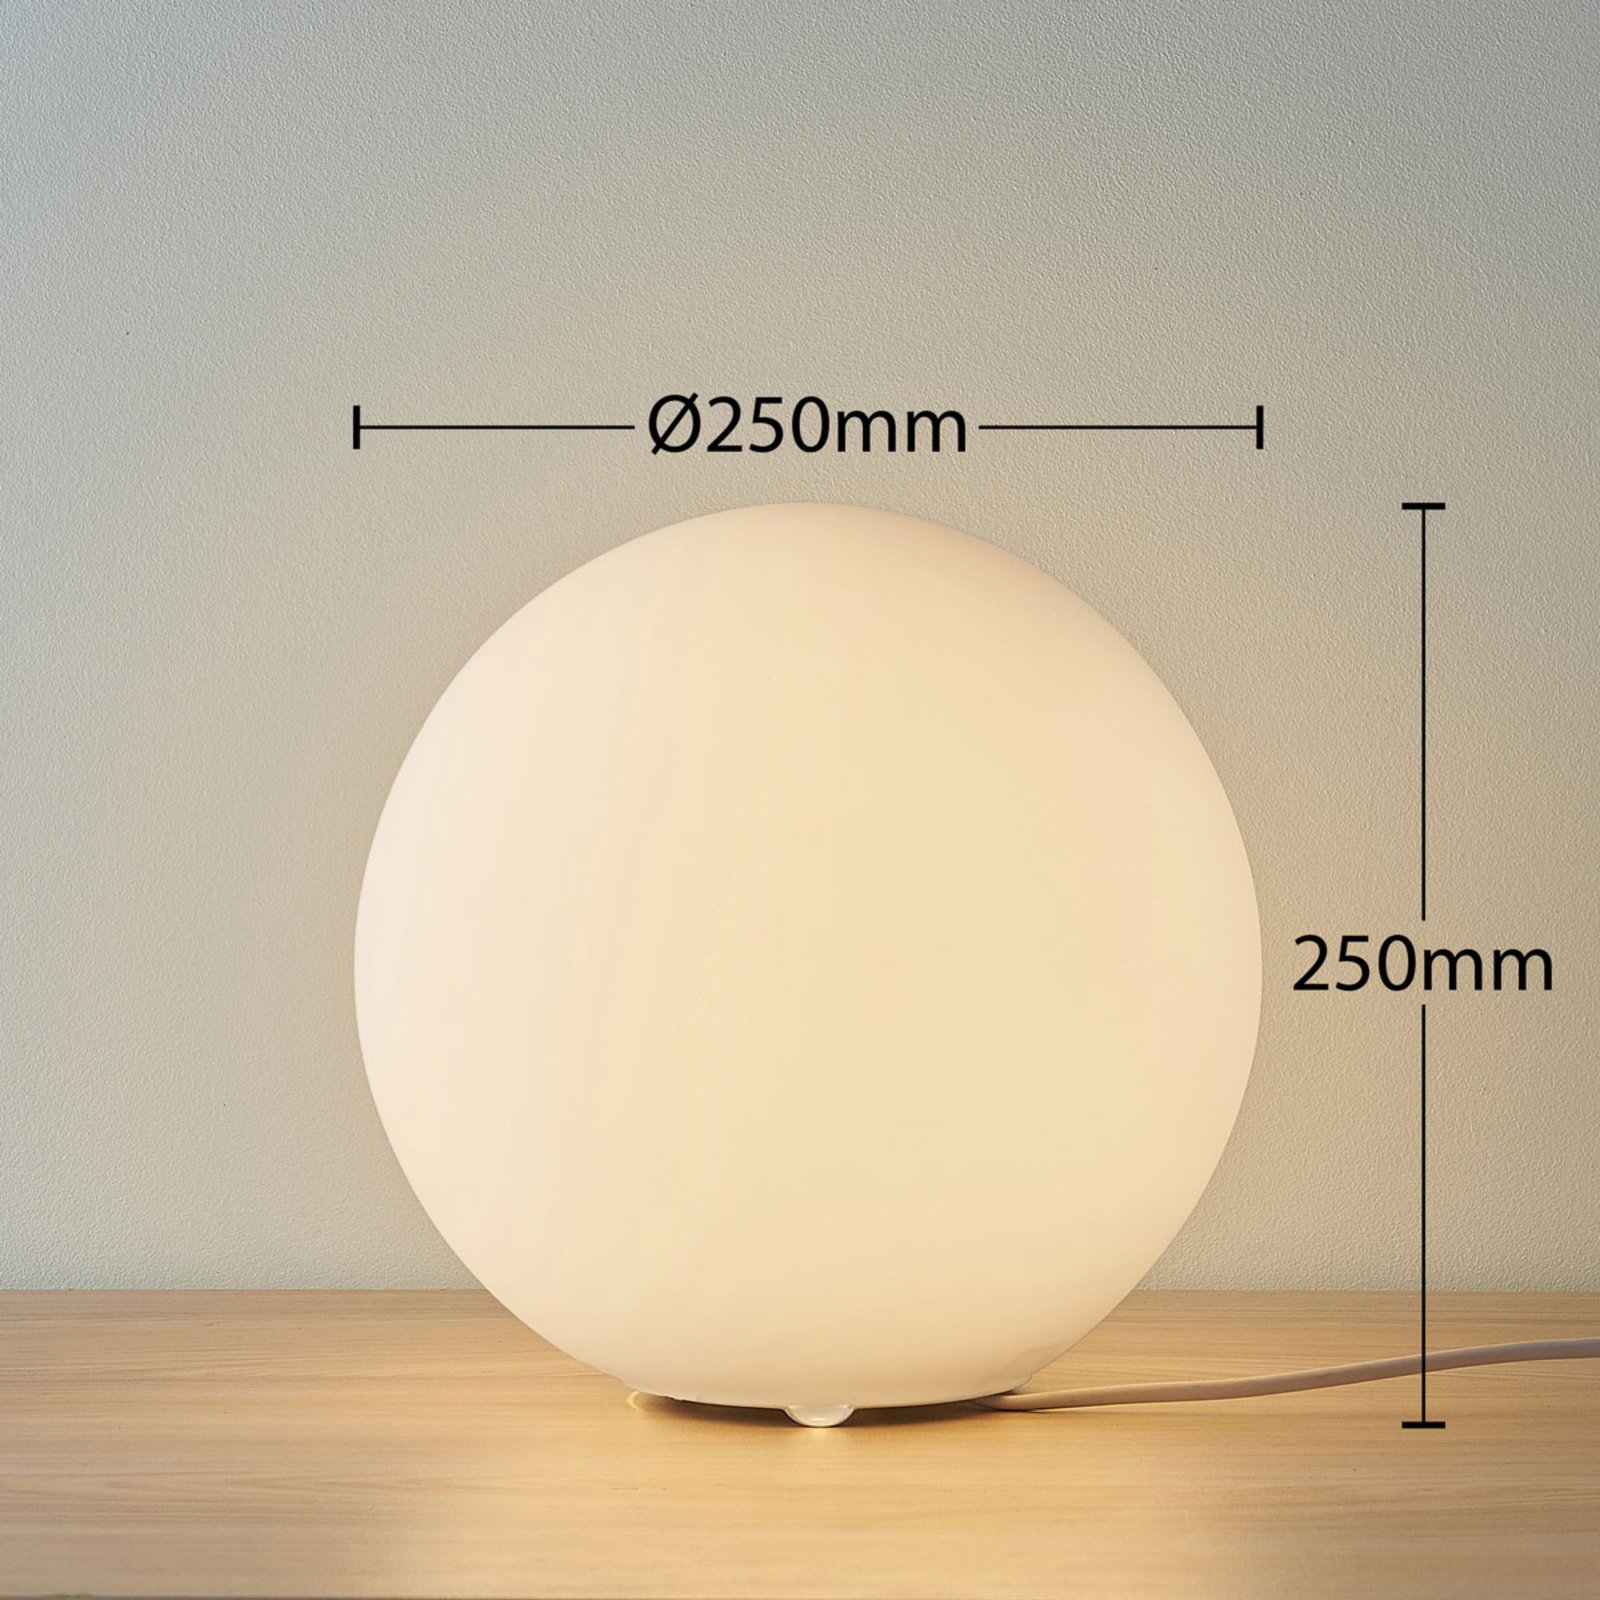 Lámpara de mesa Marike cristal esférico, blanco